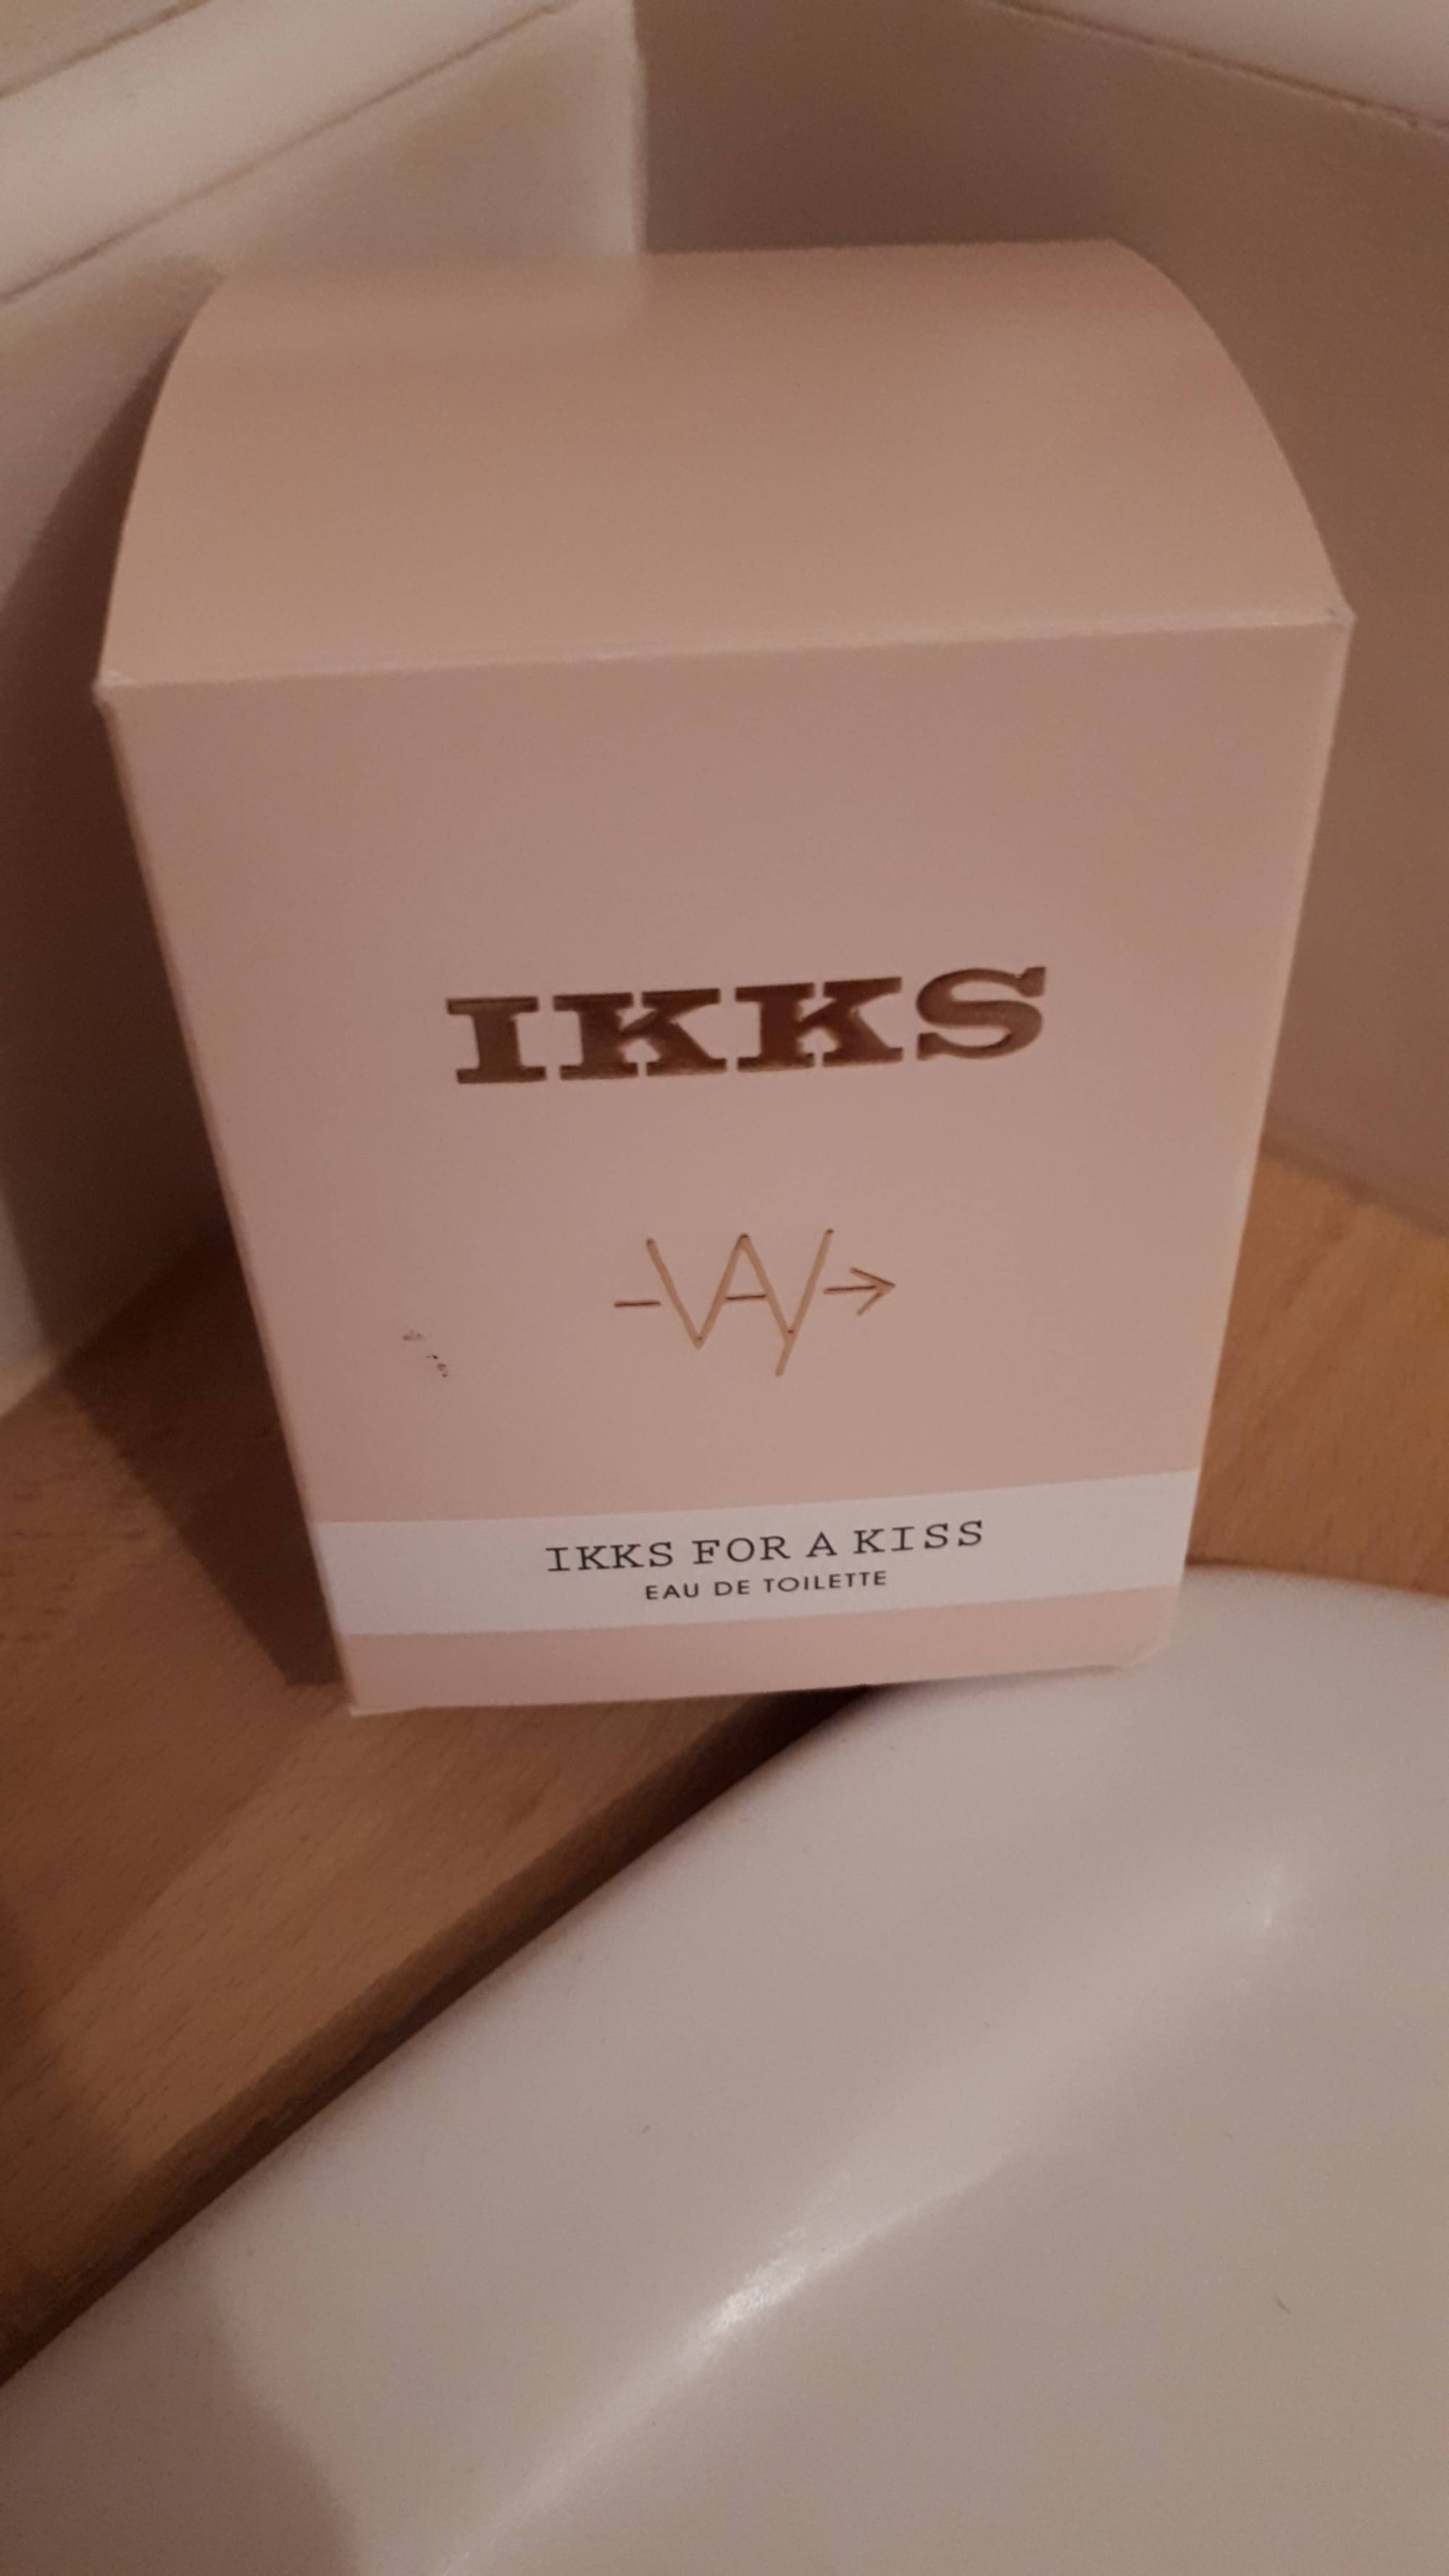 IKKS - Ikks for a kiss - Eau de toilette